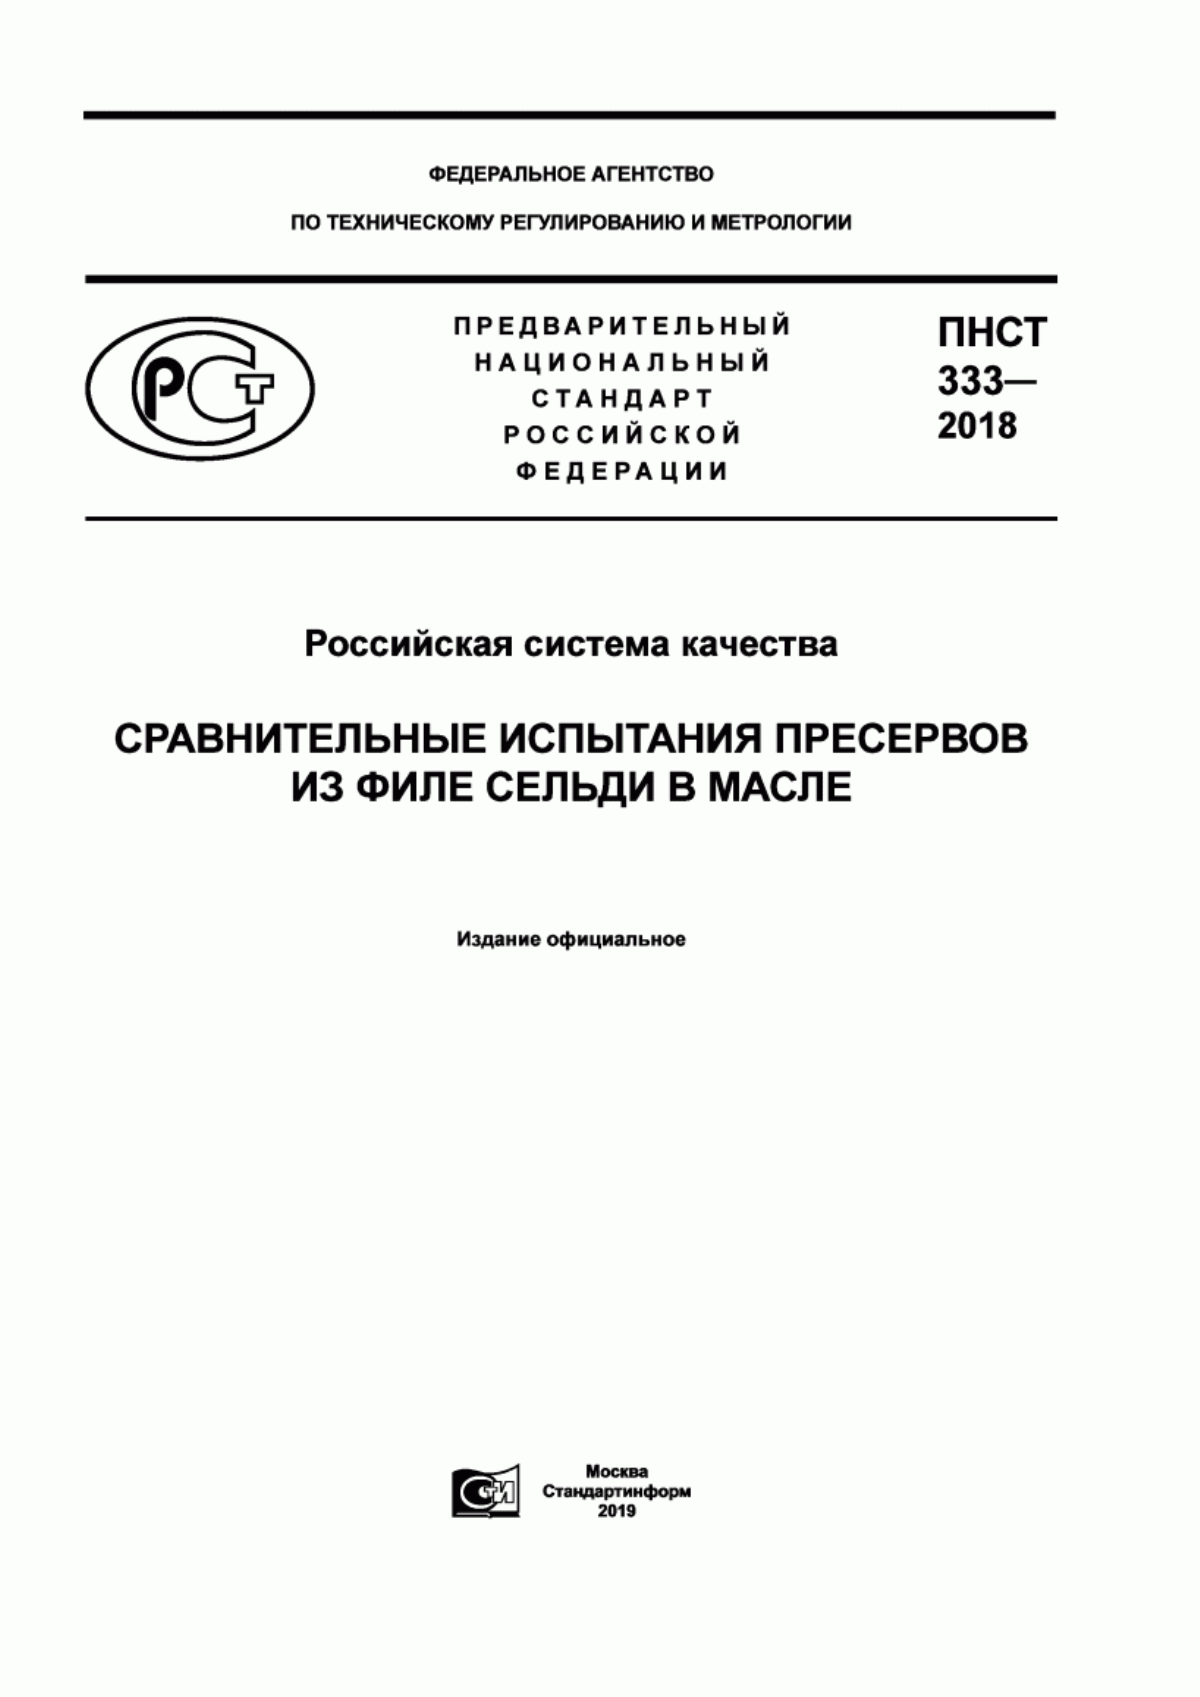 ПНСТ 333-2018 Российская система качества. Сравнительные испытания пресервов из филе сельди в масле